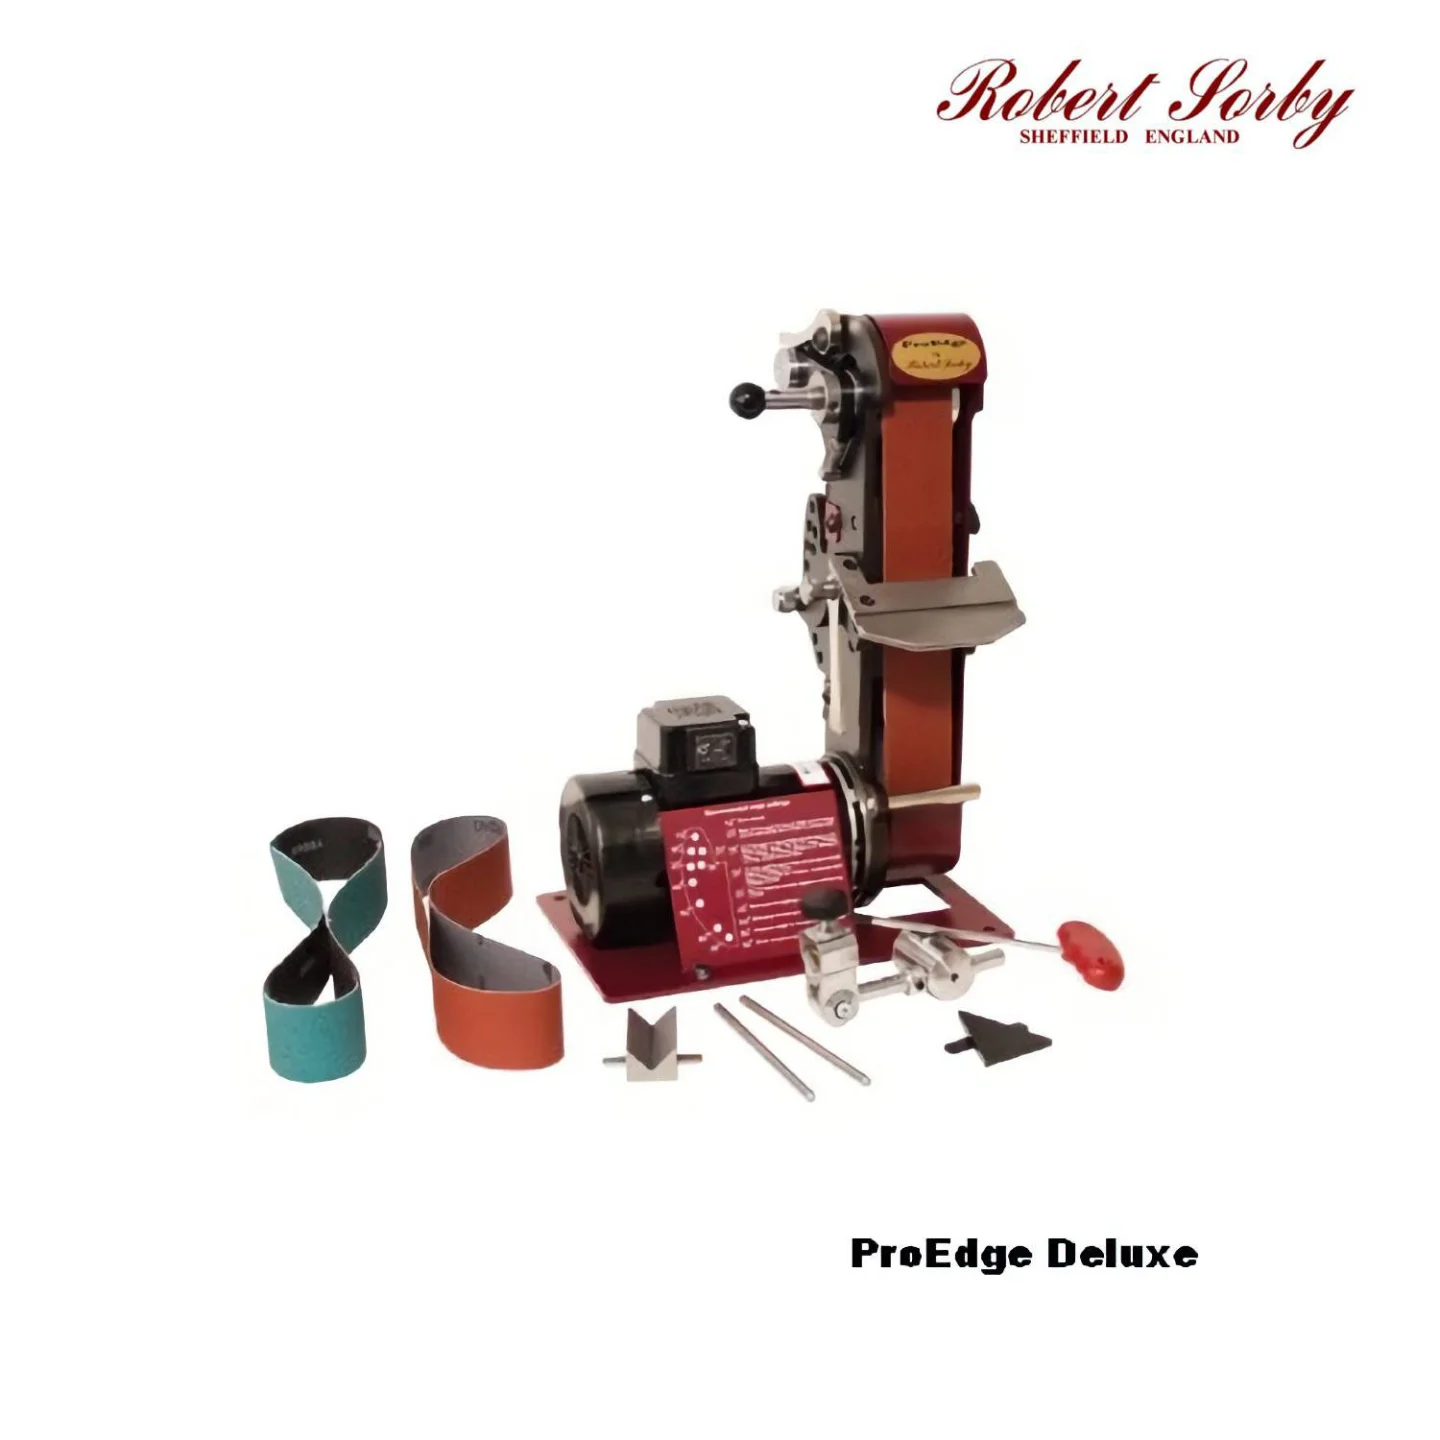 ProEdge-Deluxe-Robert-Sorby.